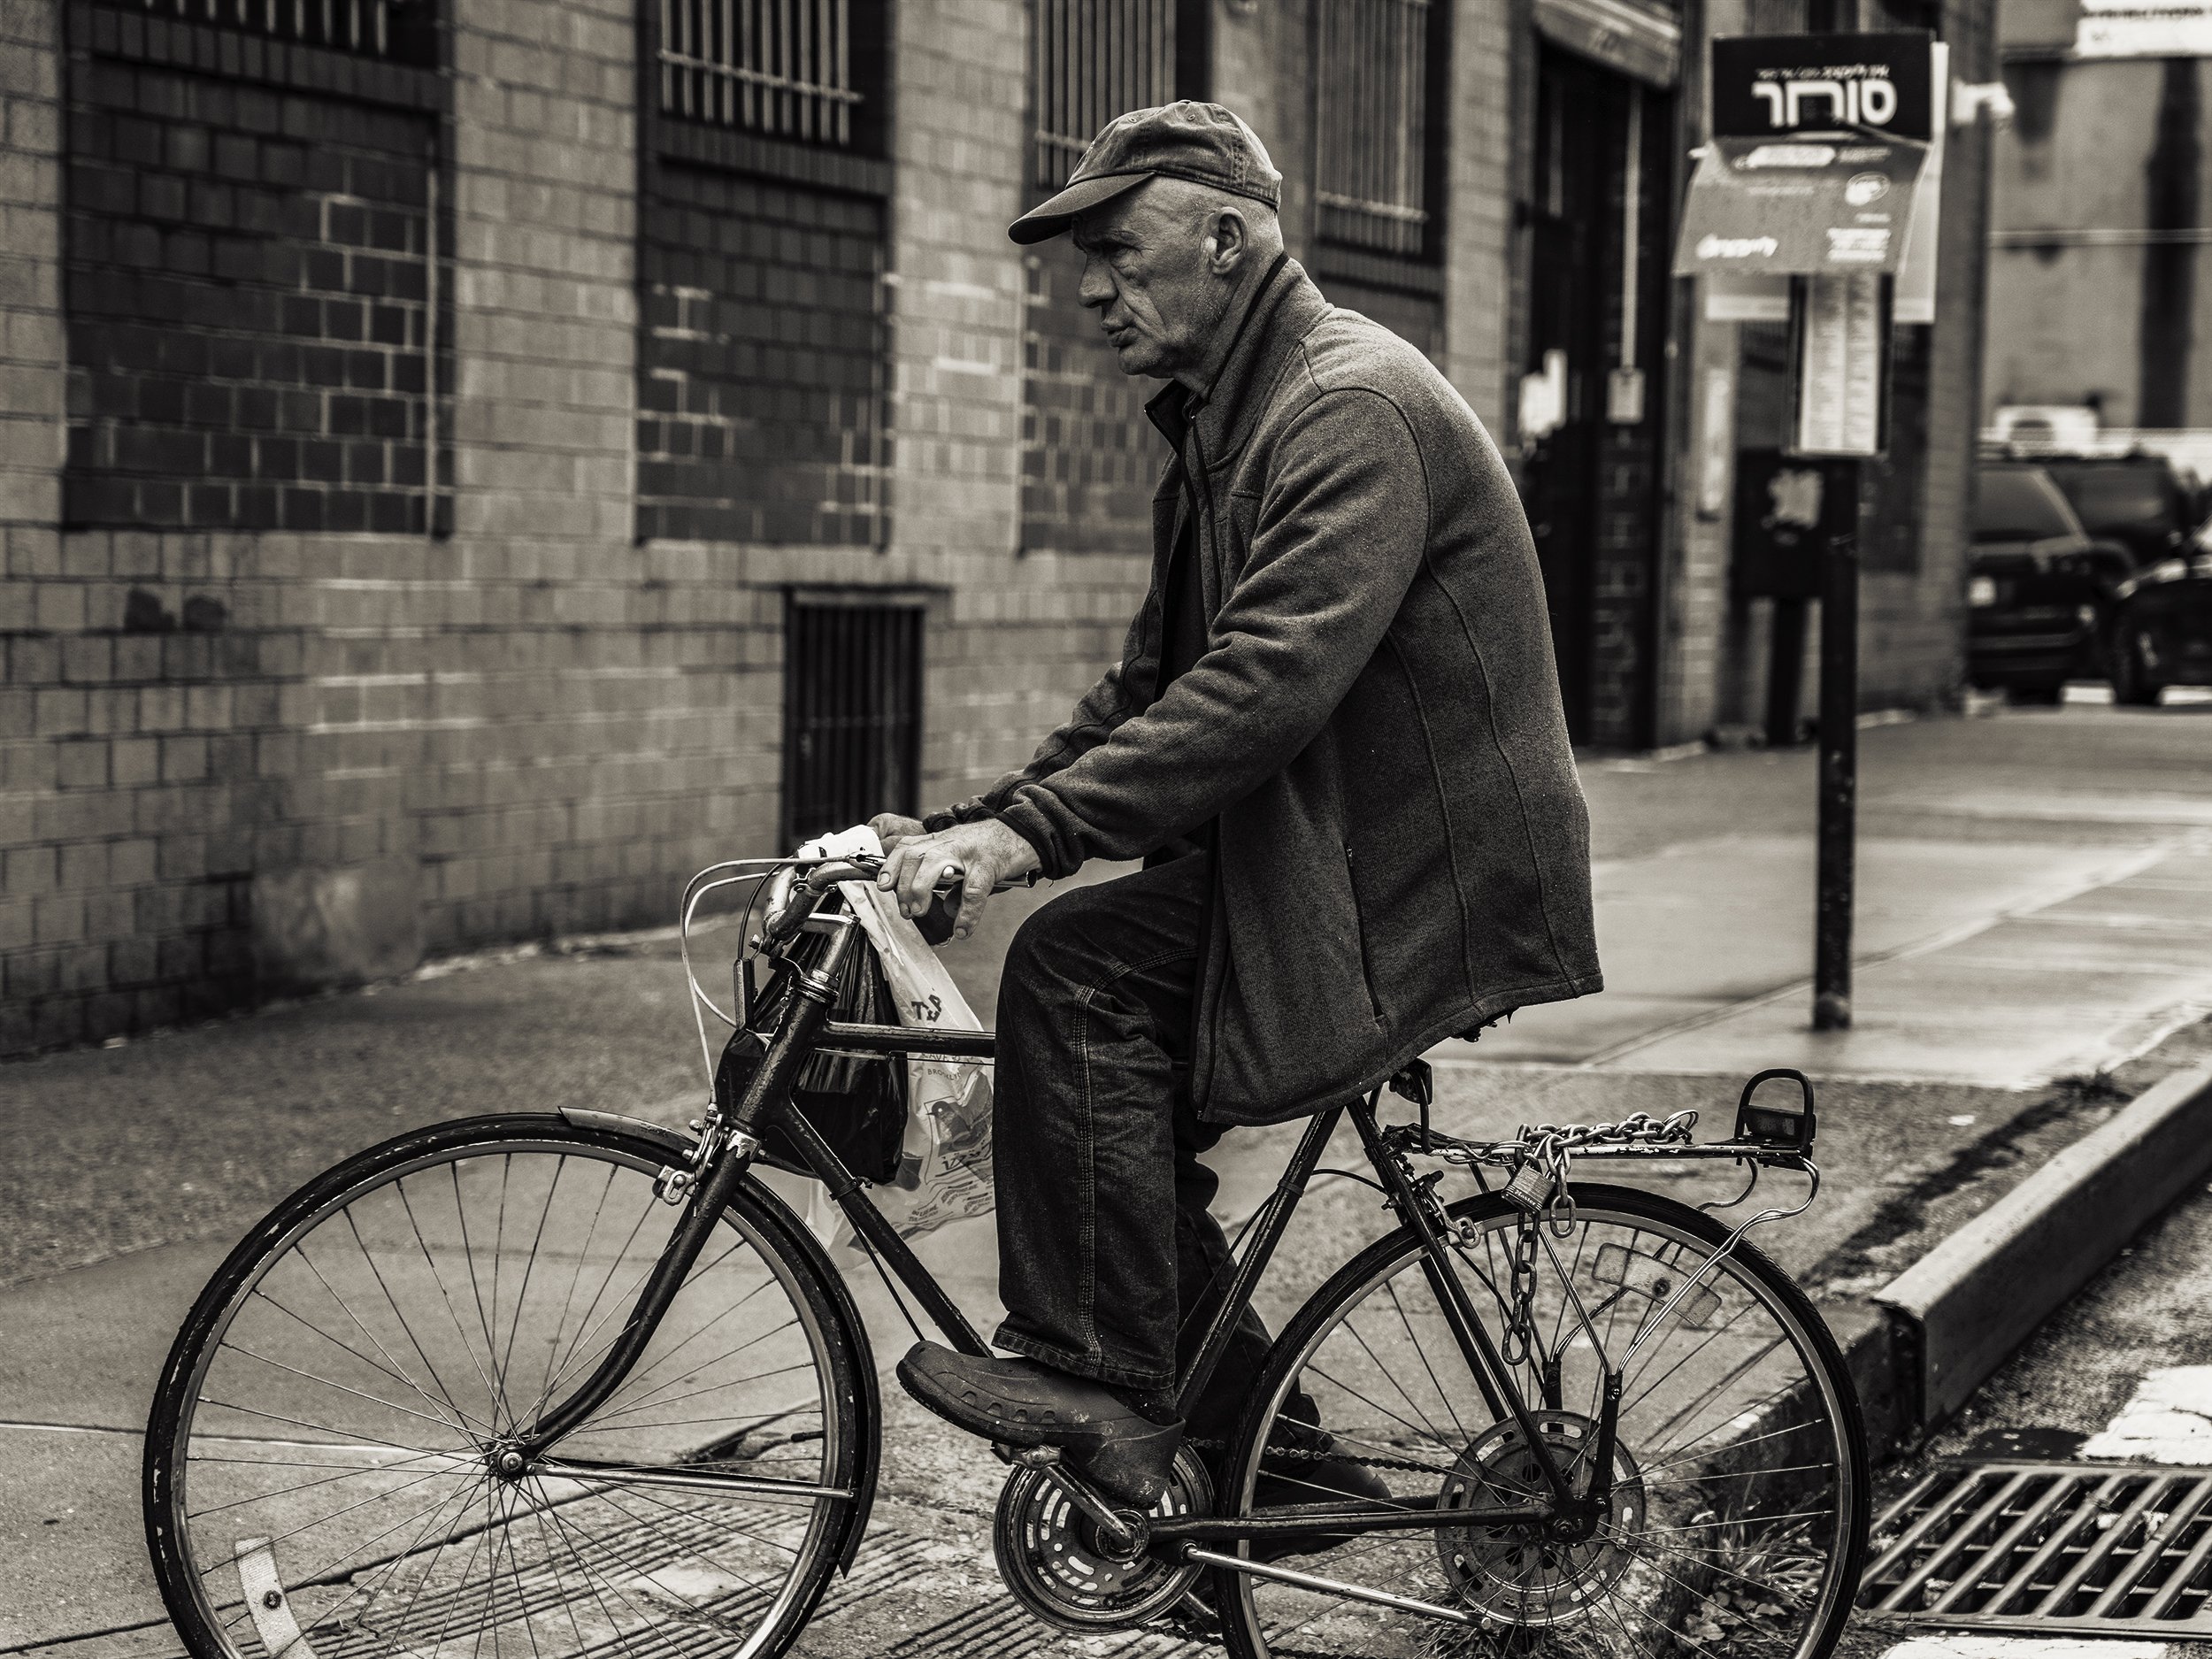 Brklyn_Street_2022_Old_Man_On_Bicycle-006.jpg